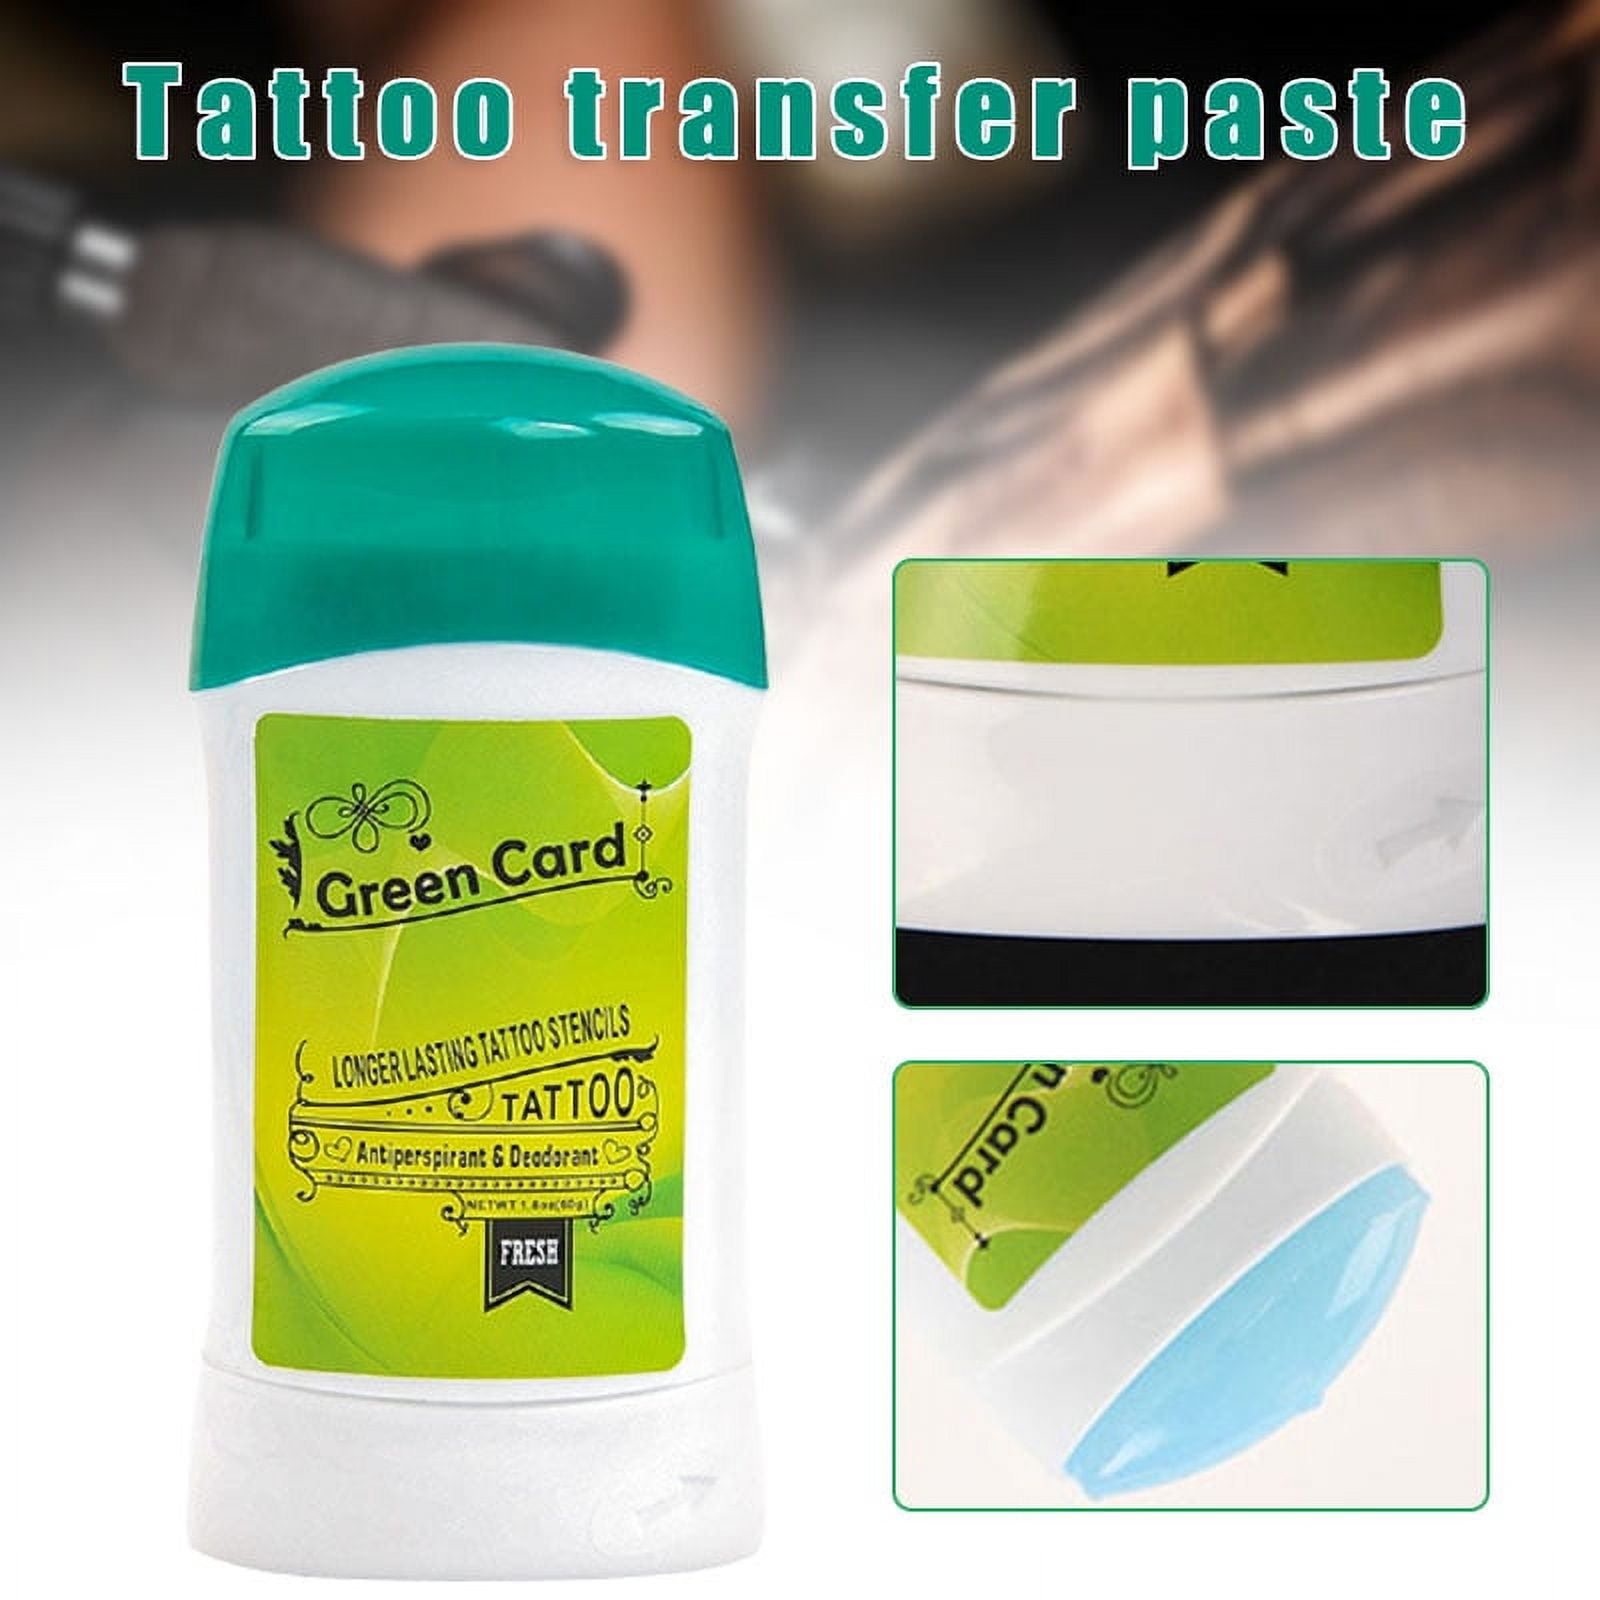 Tattoo Transfer Gel Solution Tattoo Transfer Stick Ointment - Temu